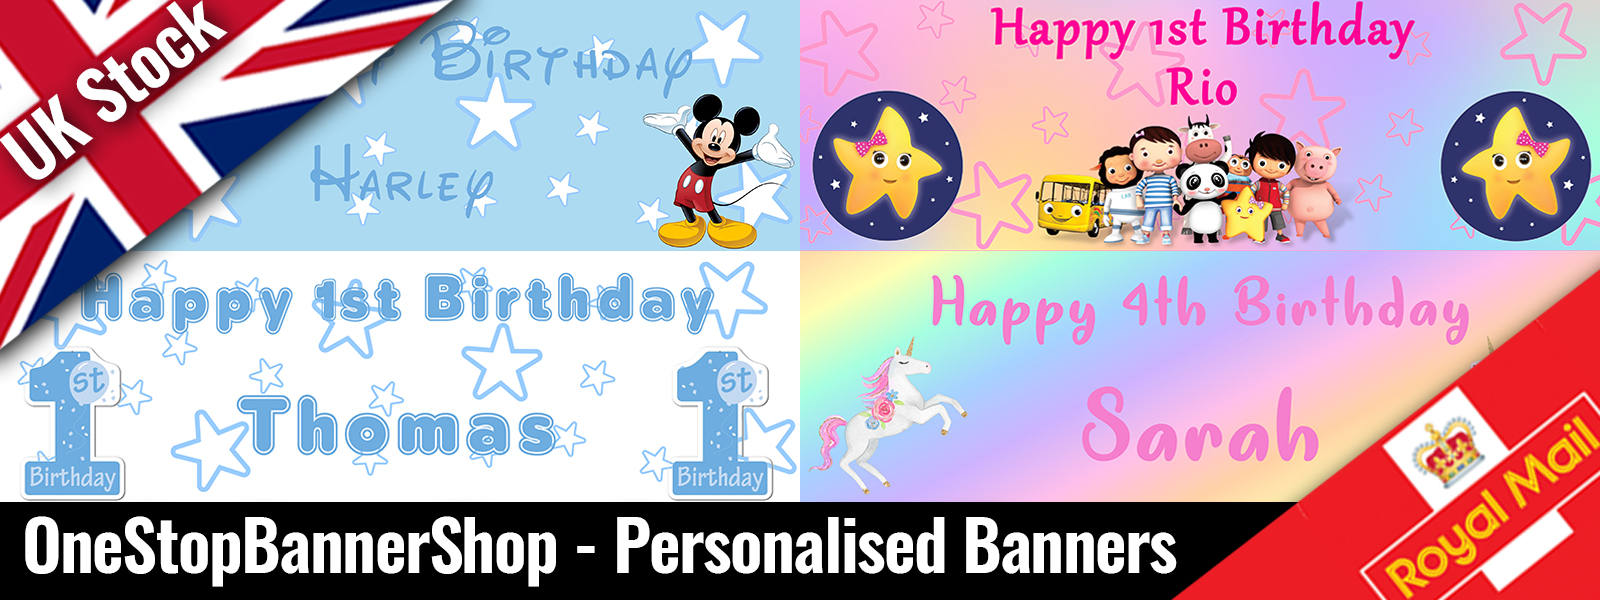 OneStopBannerShop - Personalised Banners